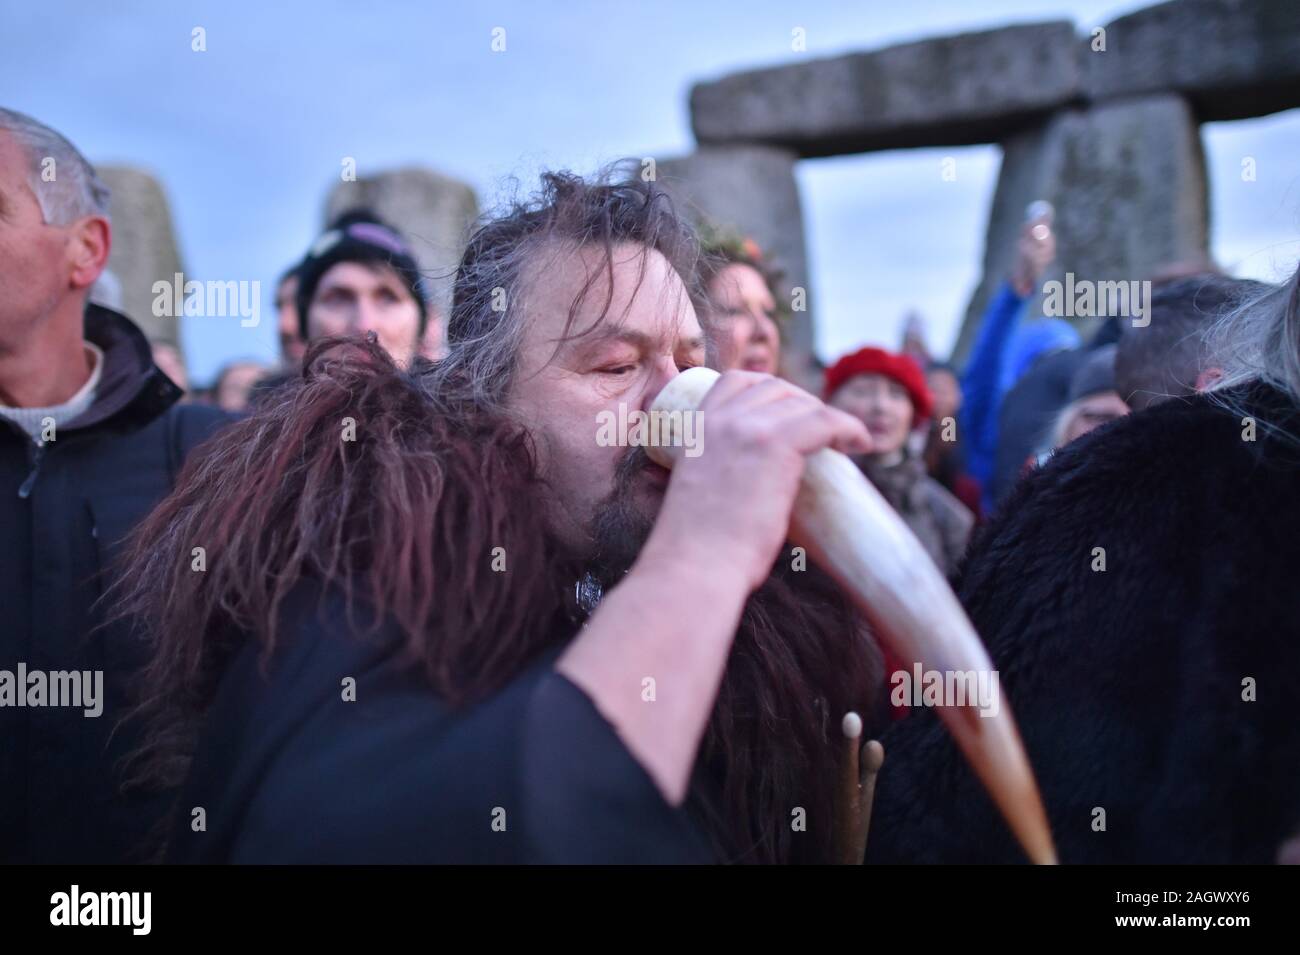 Un homme boit de l'hydromel à partir d'un animal à l'intérieur de la corne à Stonehenge le cercle de pierre dans le Wiltshire pour marquer le solstice d'hiver. Banque D'Images